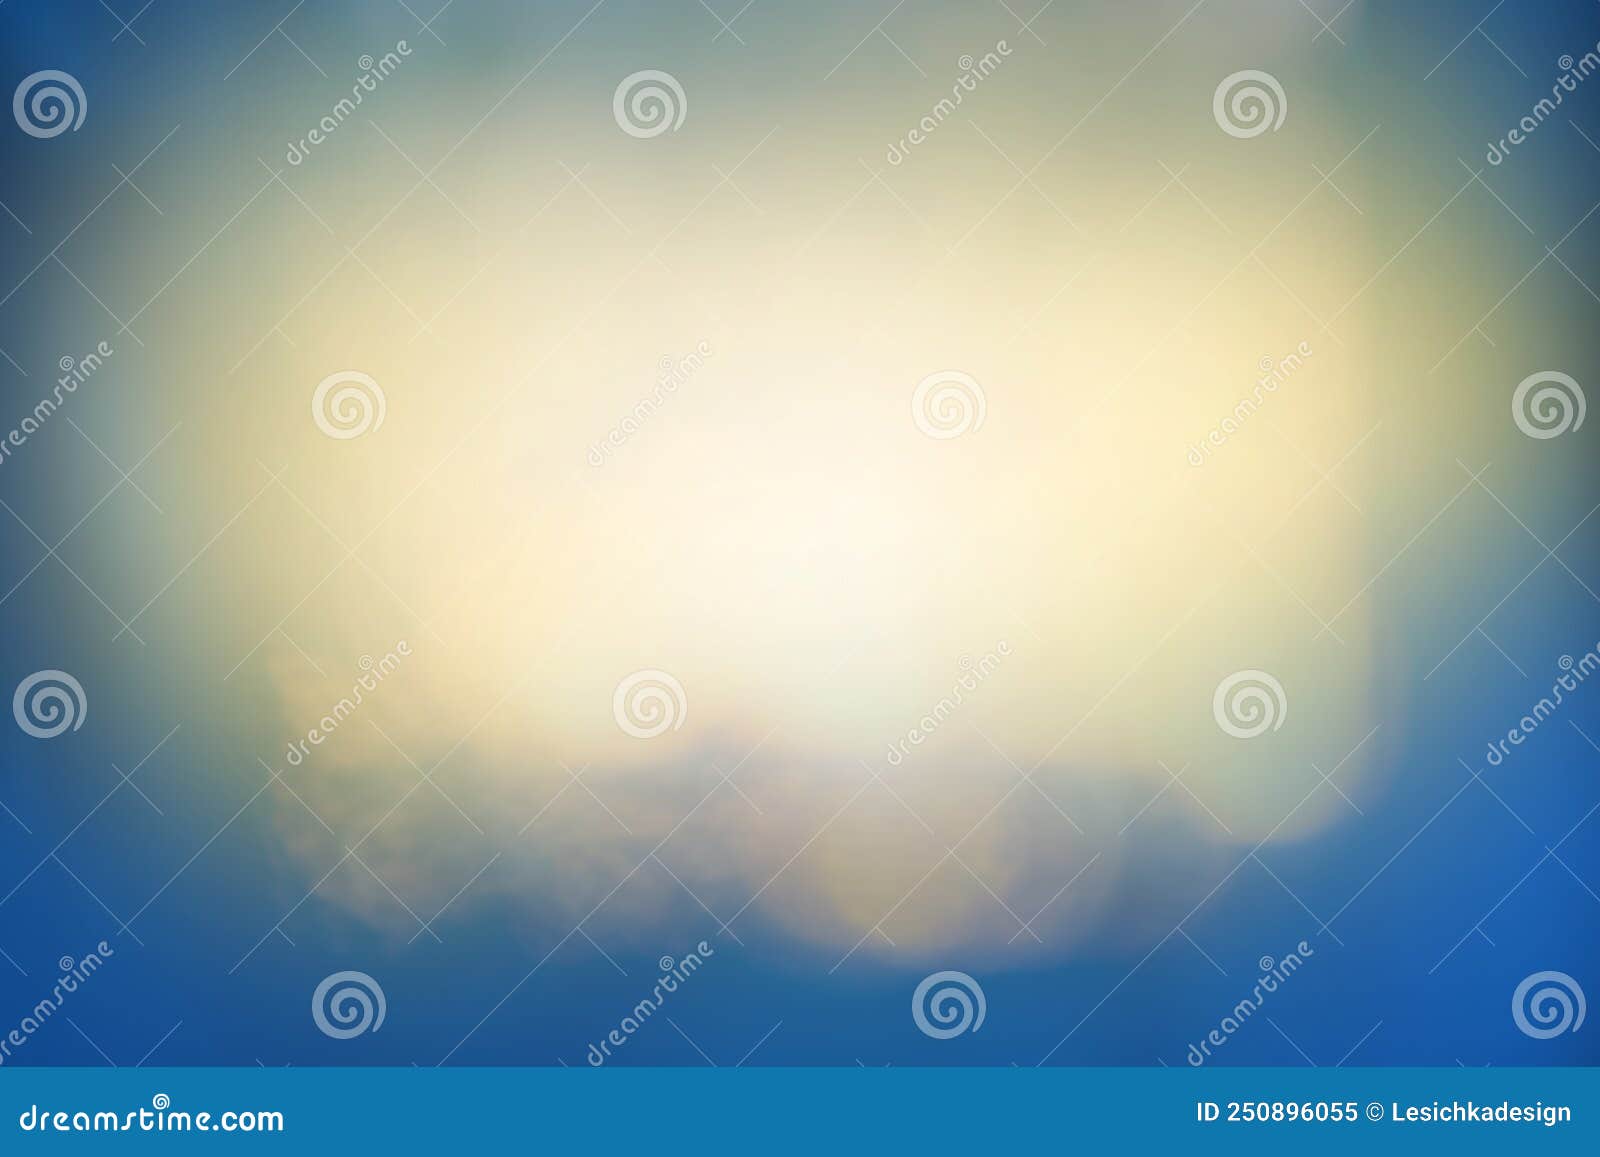 shining glare refulgence on a blue background